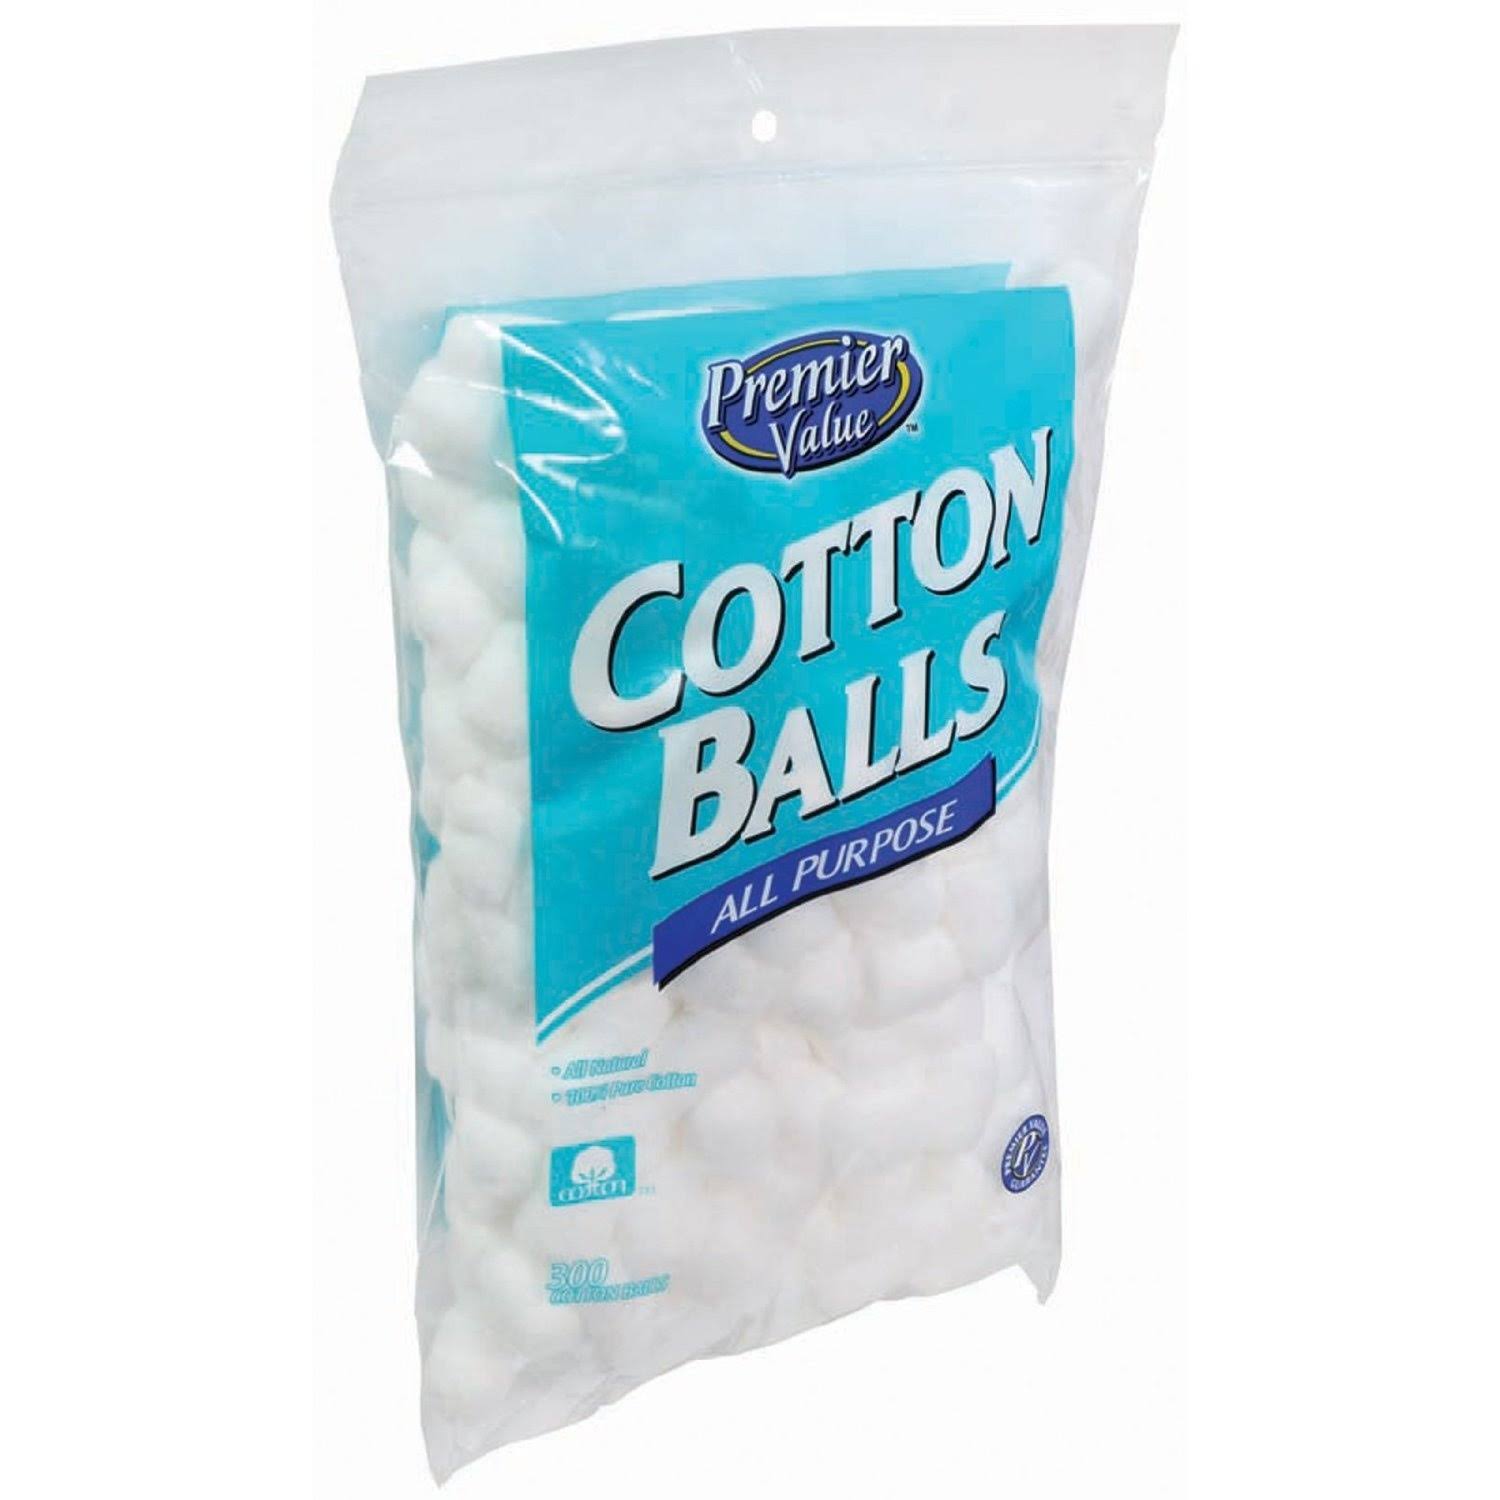 Premier Value Cotton Balls - 300ct